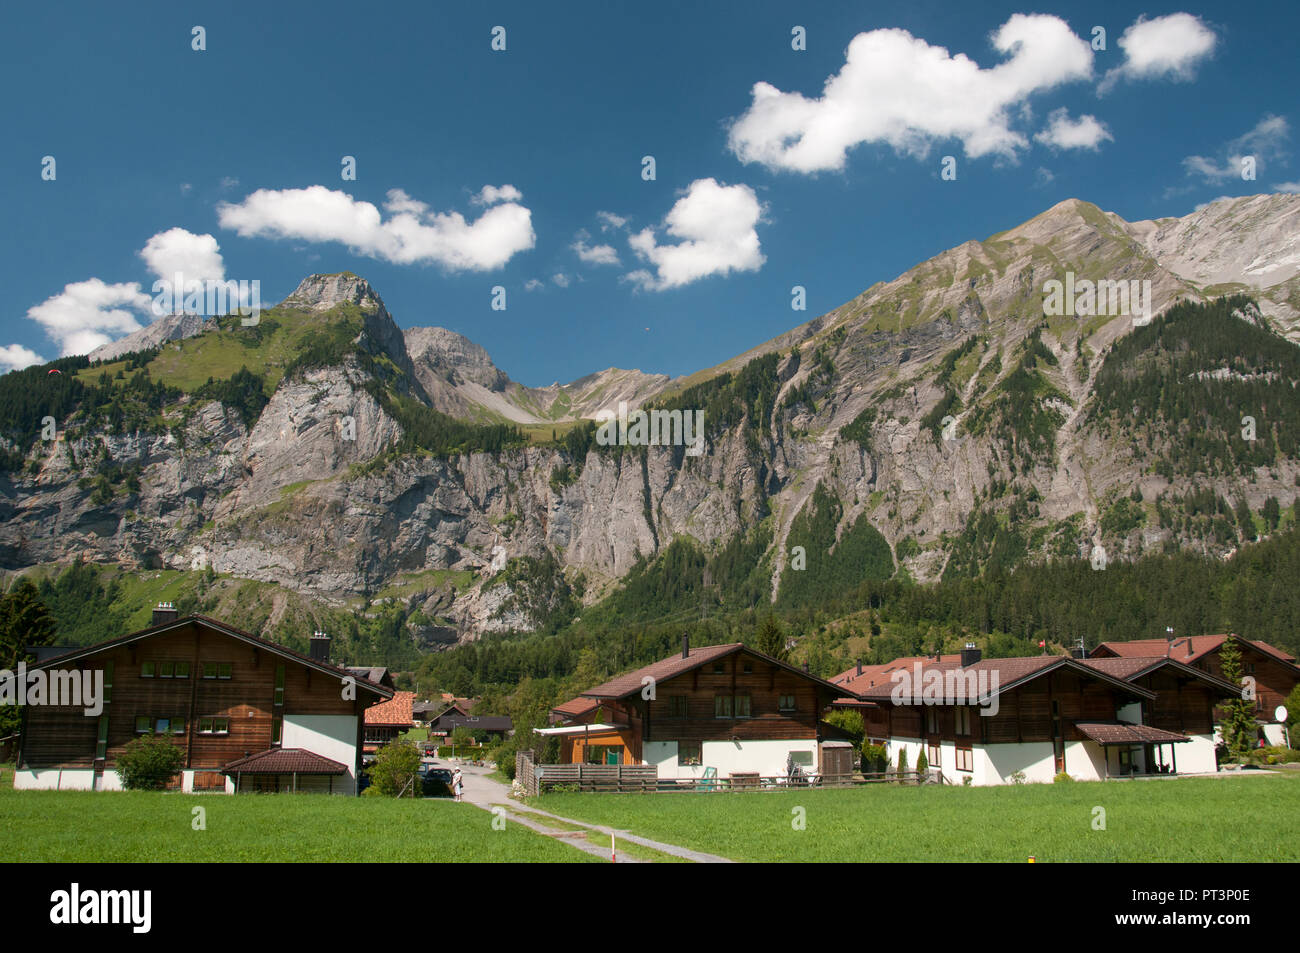 Paysage alpin près de Kandersteg, Suisse Banque D'Images